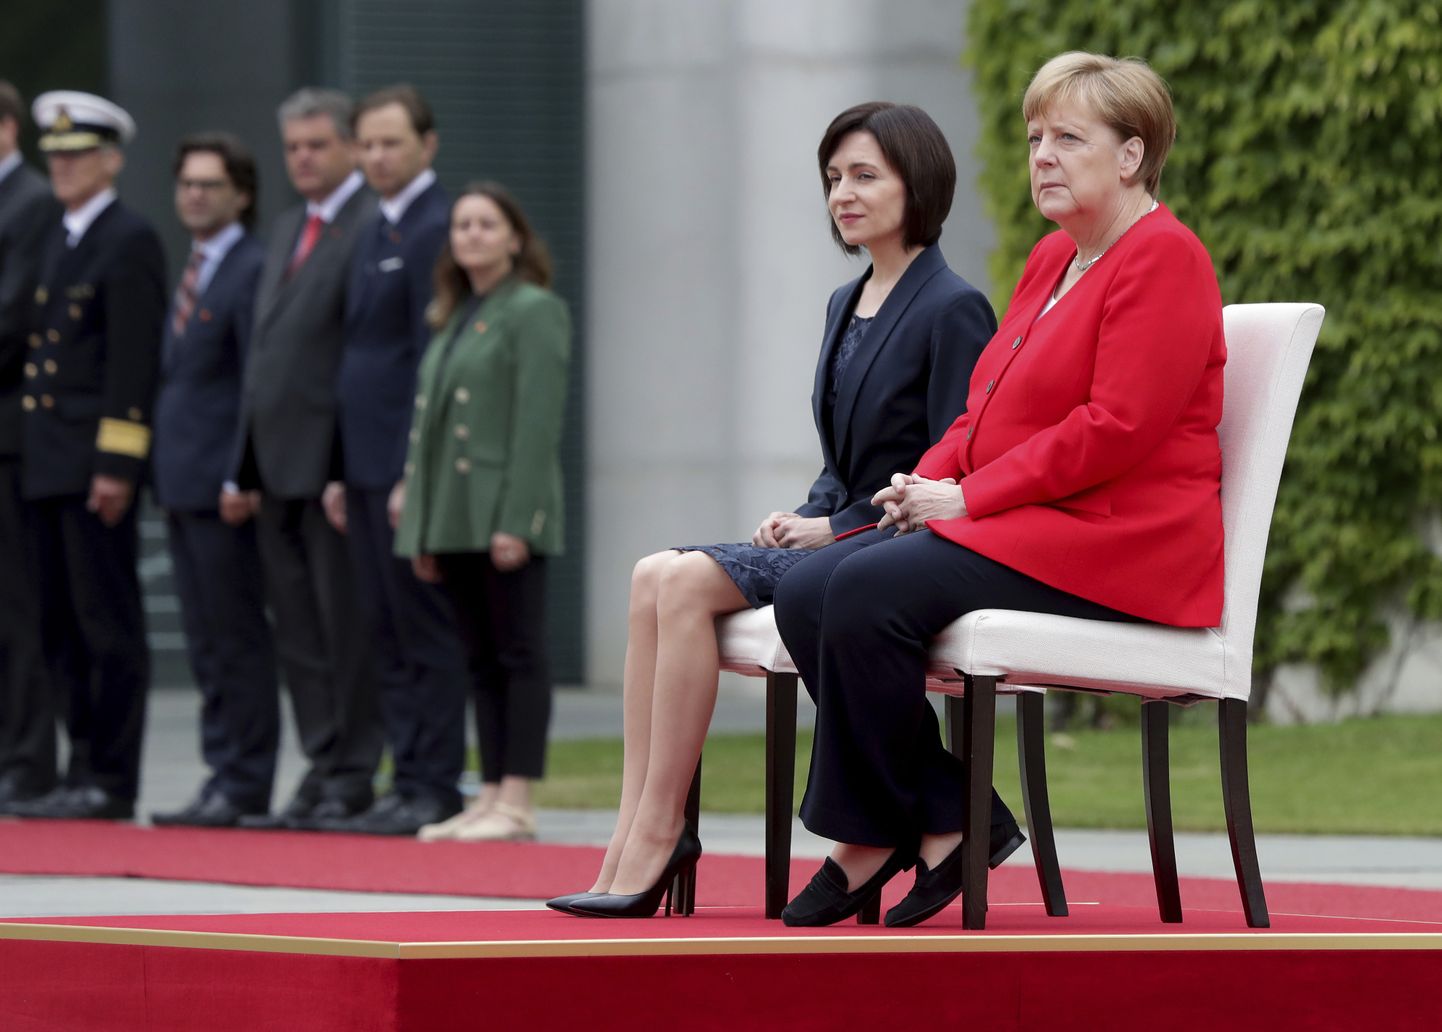 Канцлер Германии Ангела Меркель второй раз прослушала национальные гимны перед переговорами сидя.